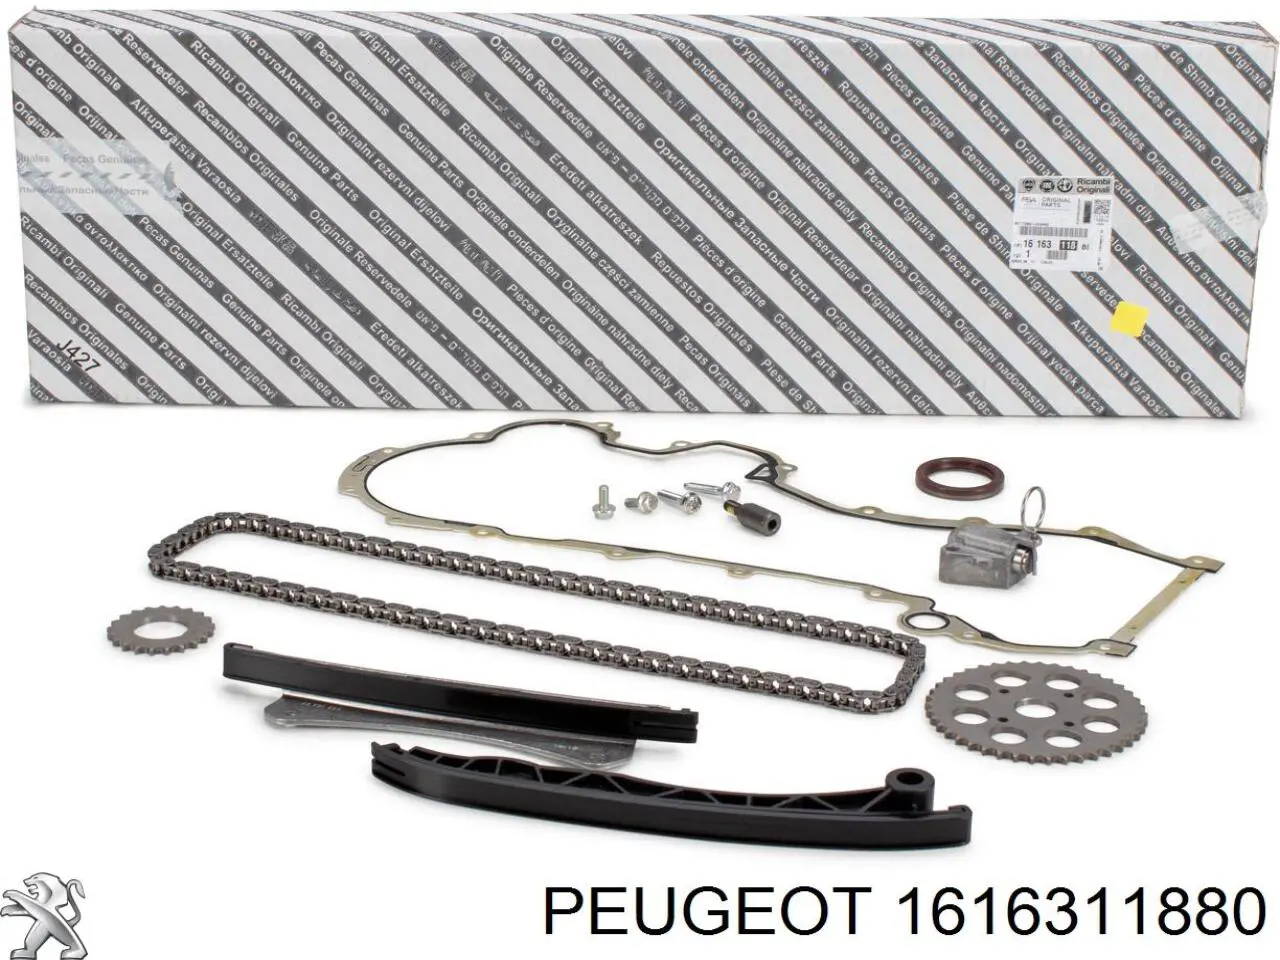 1616311880 Peugeot/Citroen cadeia do mecanismo de distribuição de gás, kit